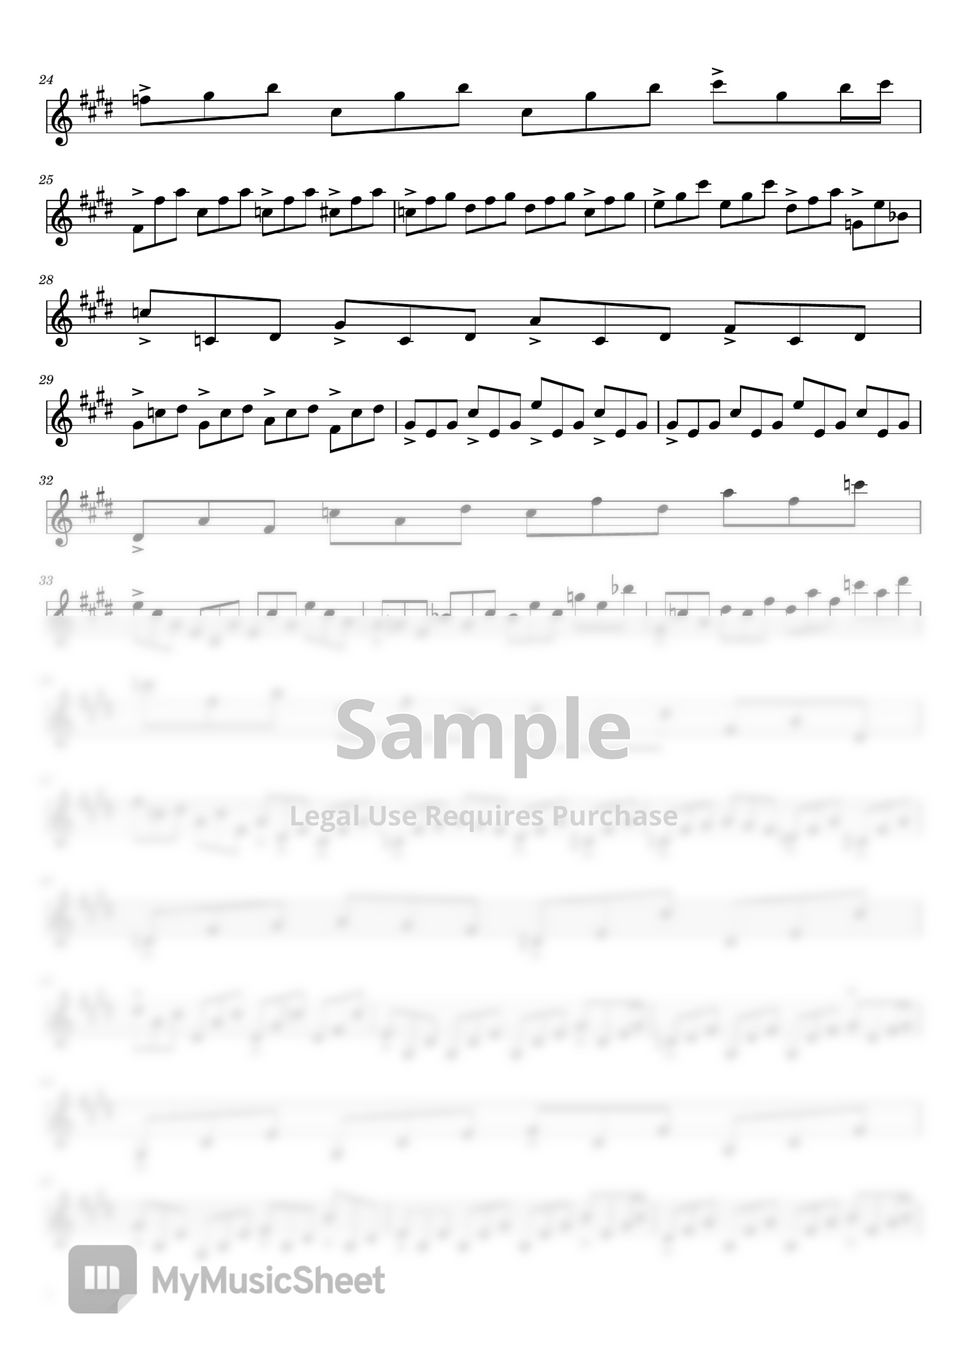 Ludwig van Beethoven - Moonlight Sonata (Sonata No. 14 in C-Sharp Minor Op. 27 No. 2  - For violin solo) by poon